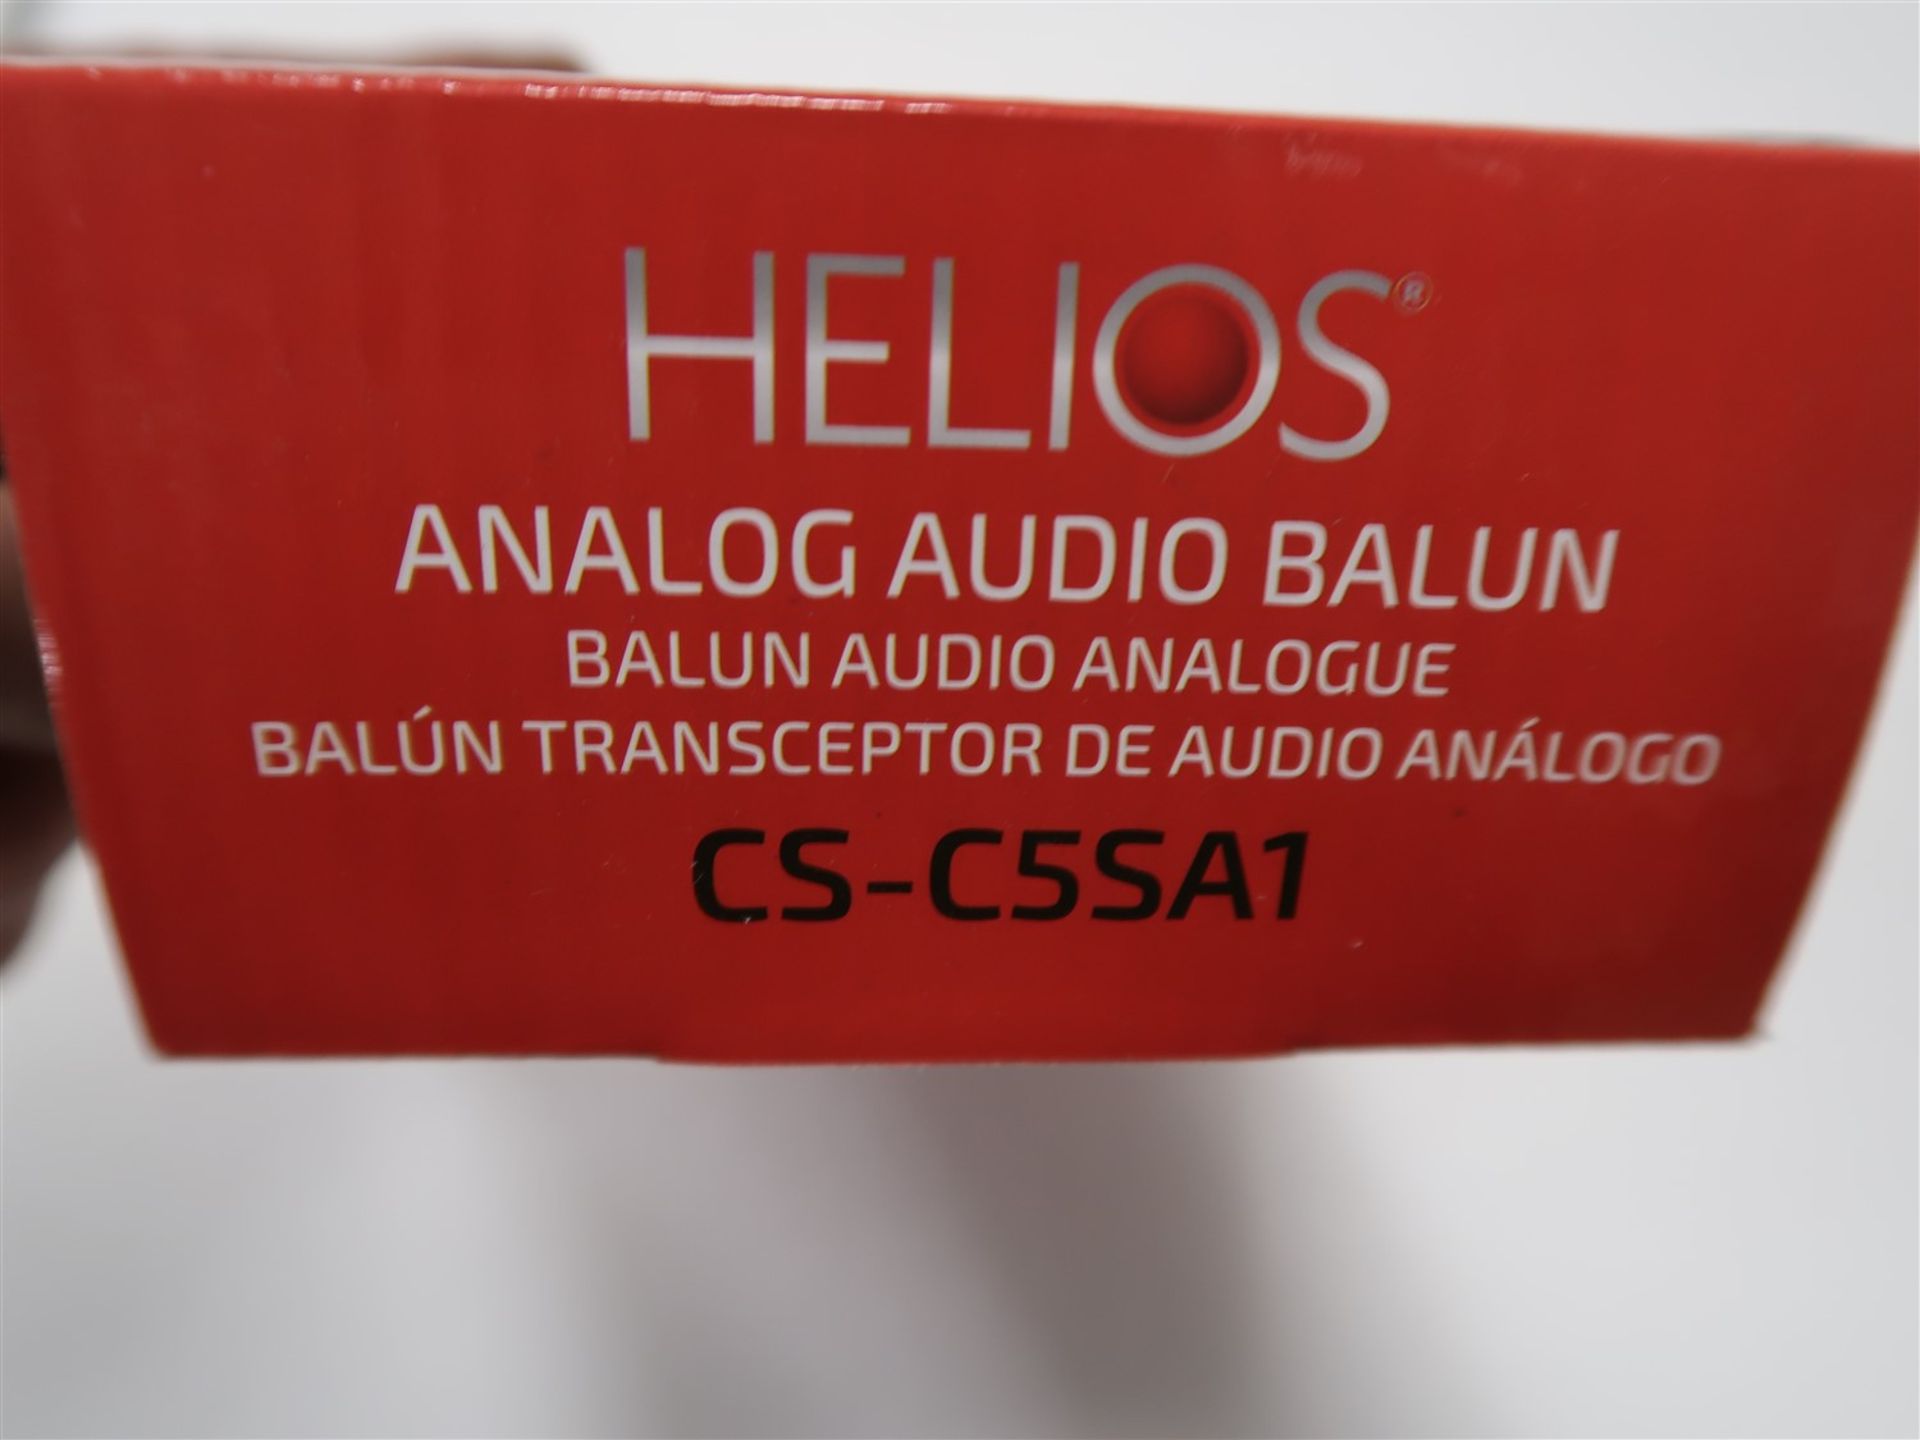 HELIOS ANALOG AUDIO BALUN CS-C5S A1 - Image 3 of 3